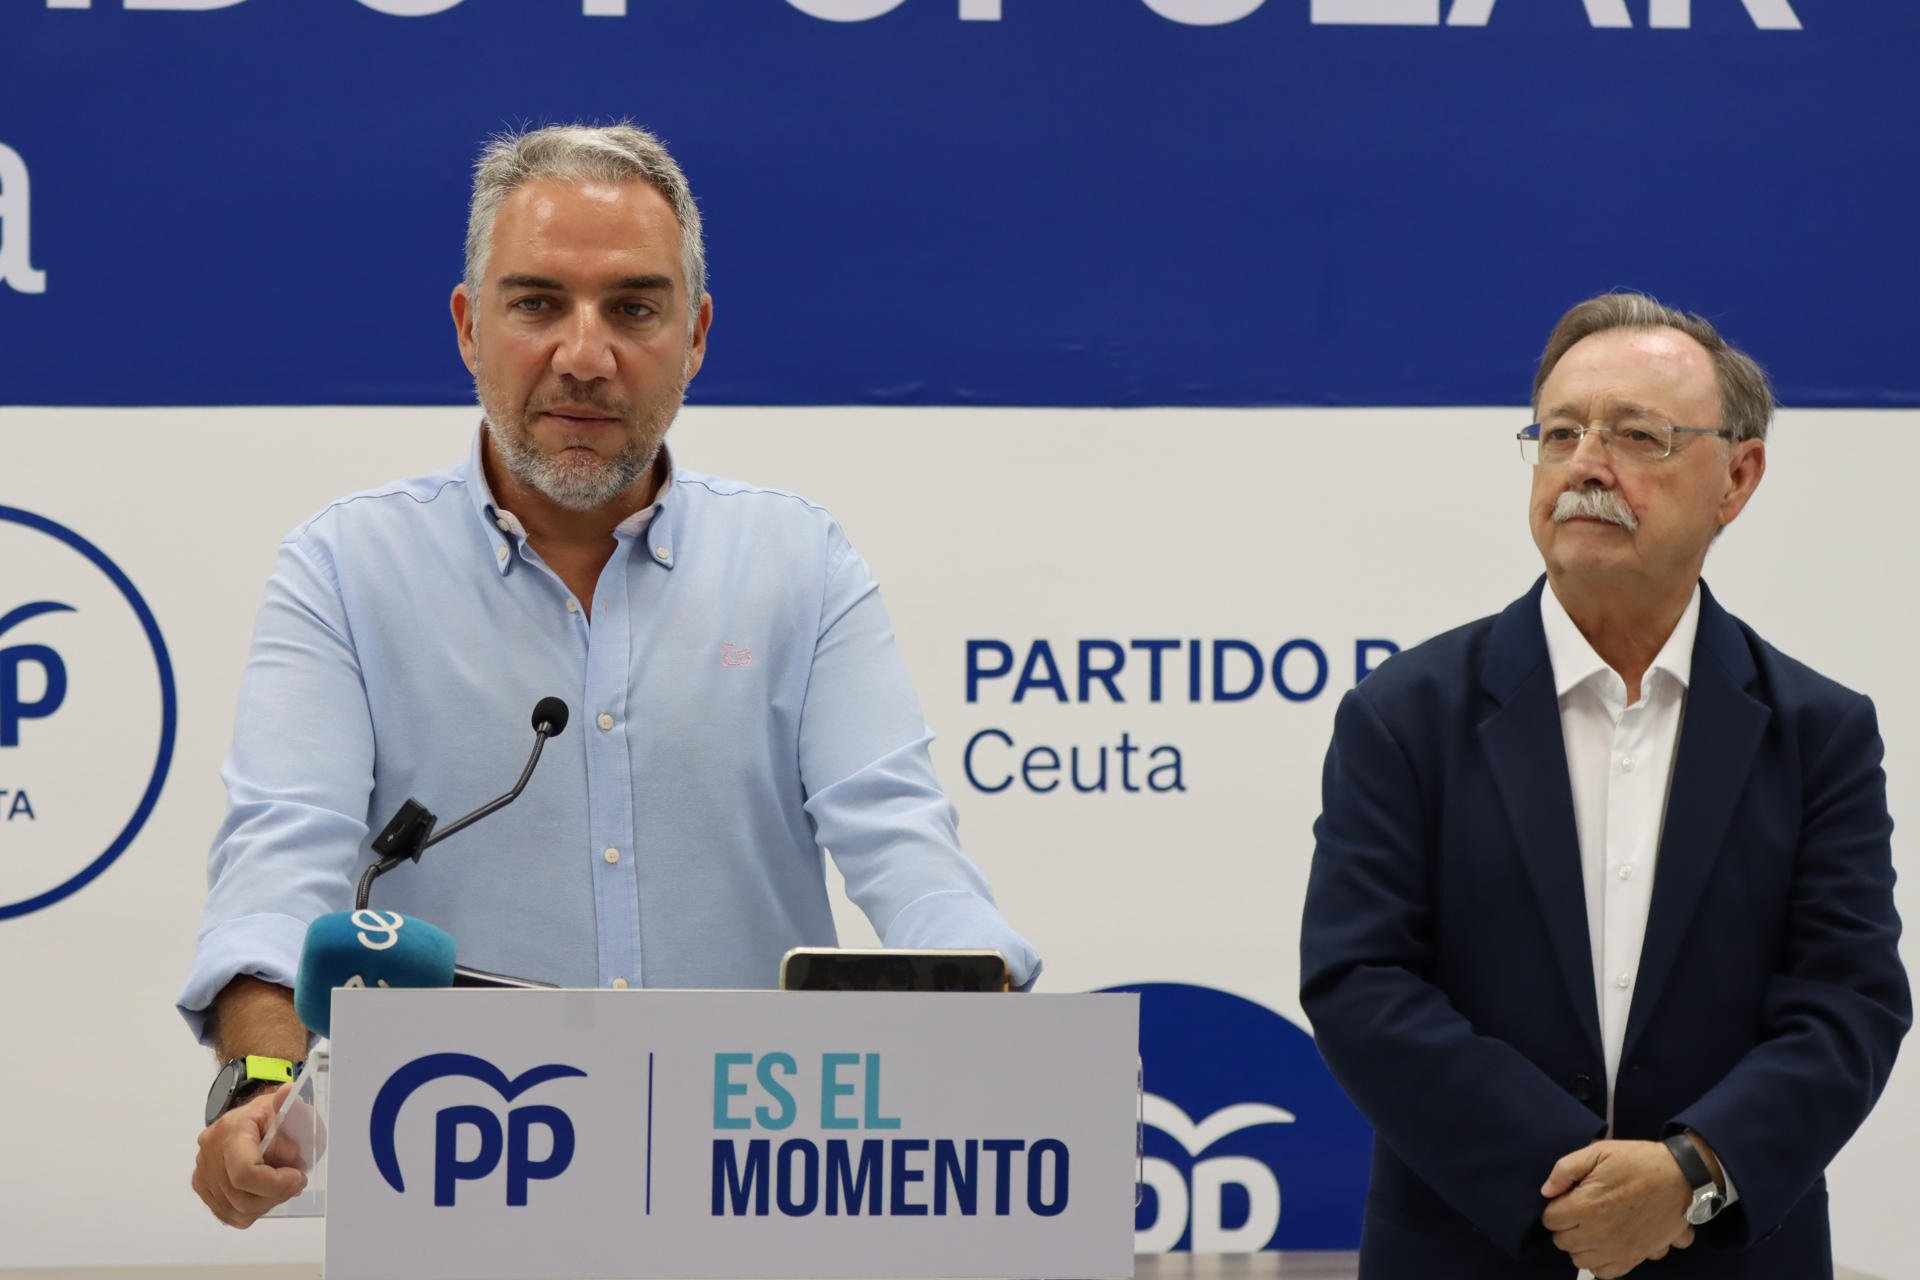 El PP carrega contra la candidatura de Nadia Calviño al BEI: "És una anomalia democràtica"